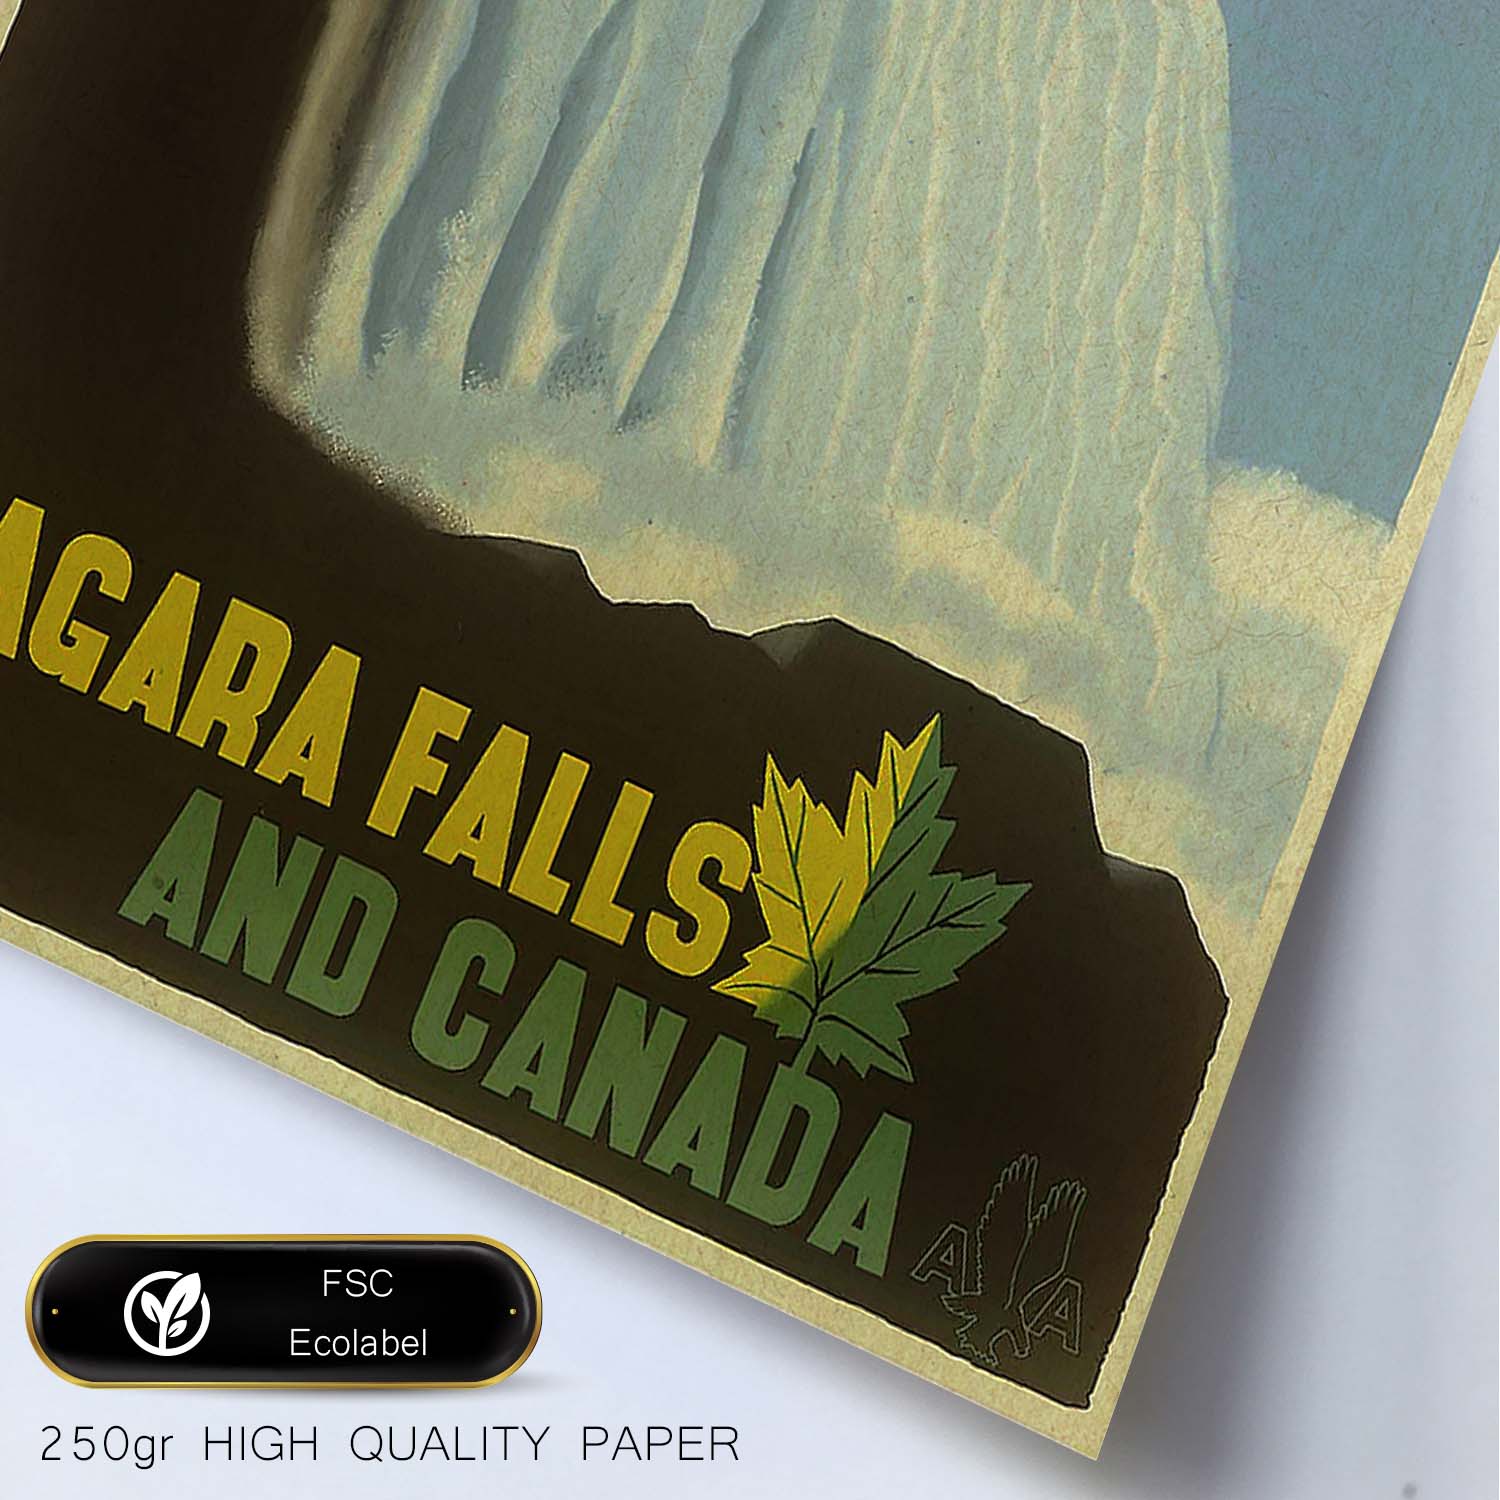 Poster Vintage. Cartel Vintage de América. Cataratas del Niagara.-Artwork-Nacnic-Nacnic Estudio SL